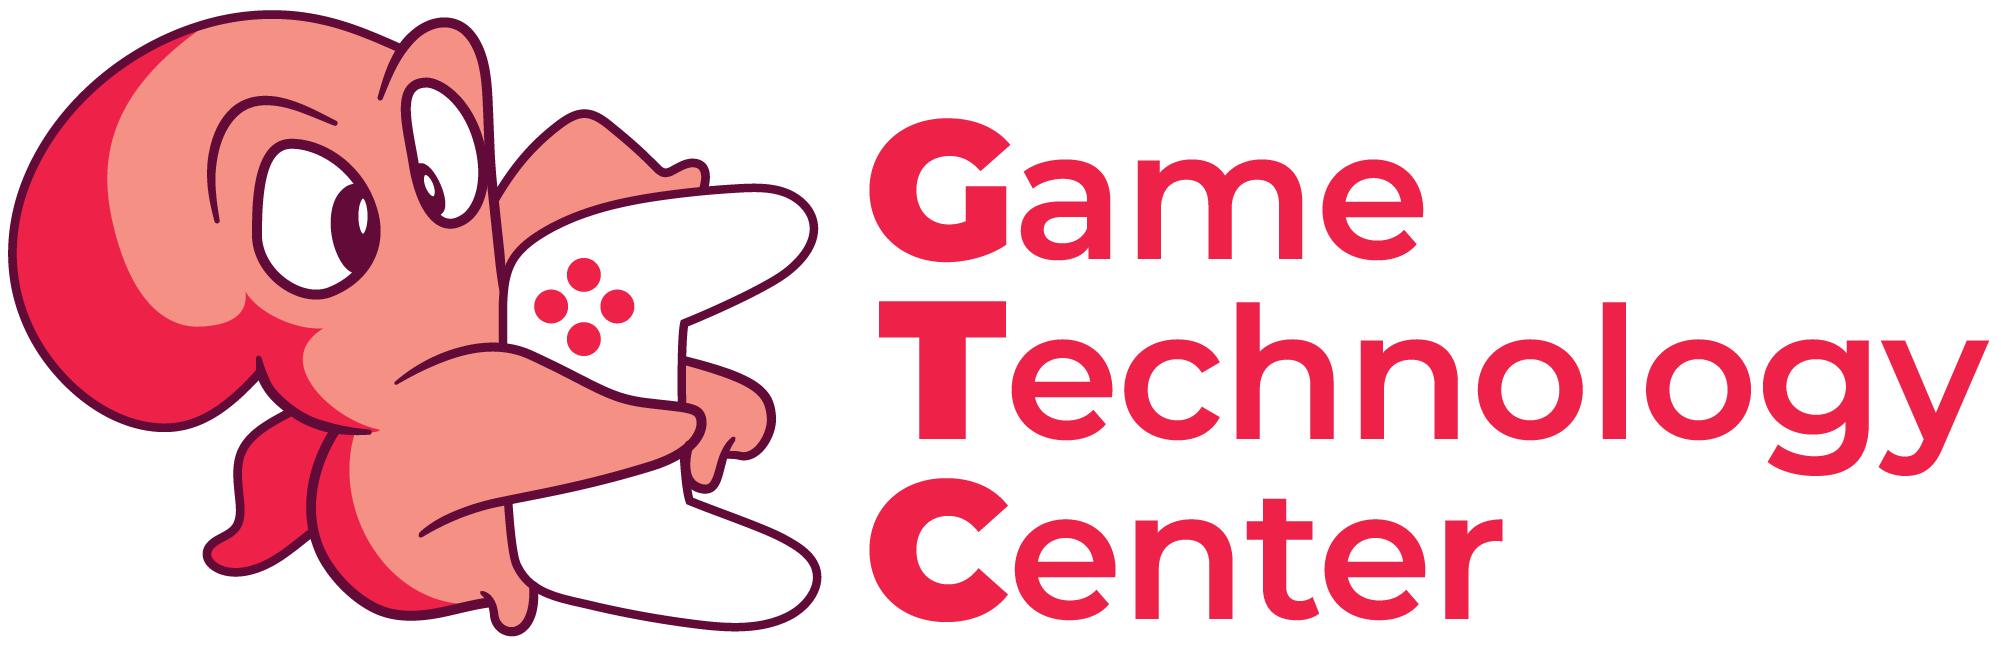 Game Technolog Center logo